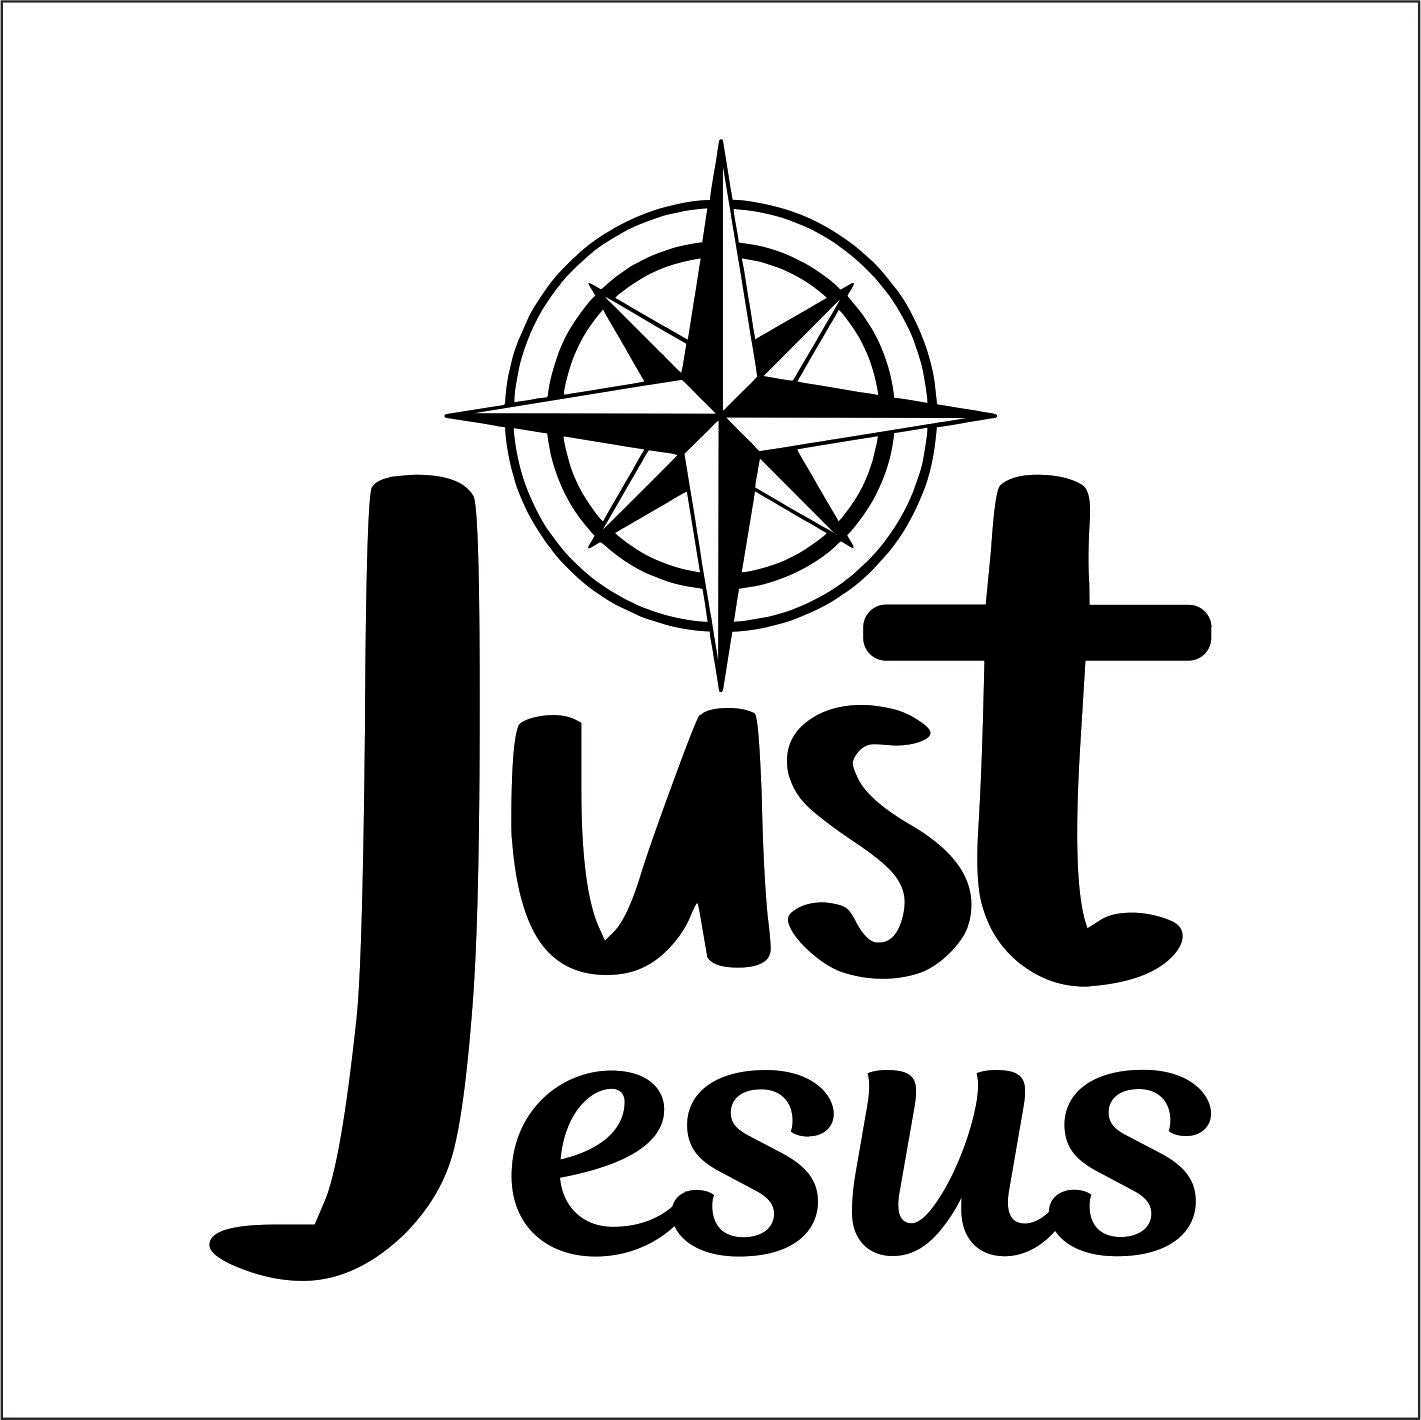 JUST JESUS Vinyl Decal Sticker